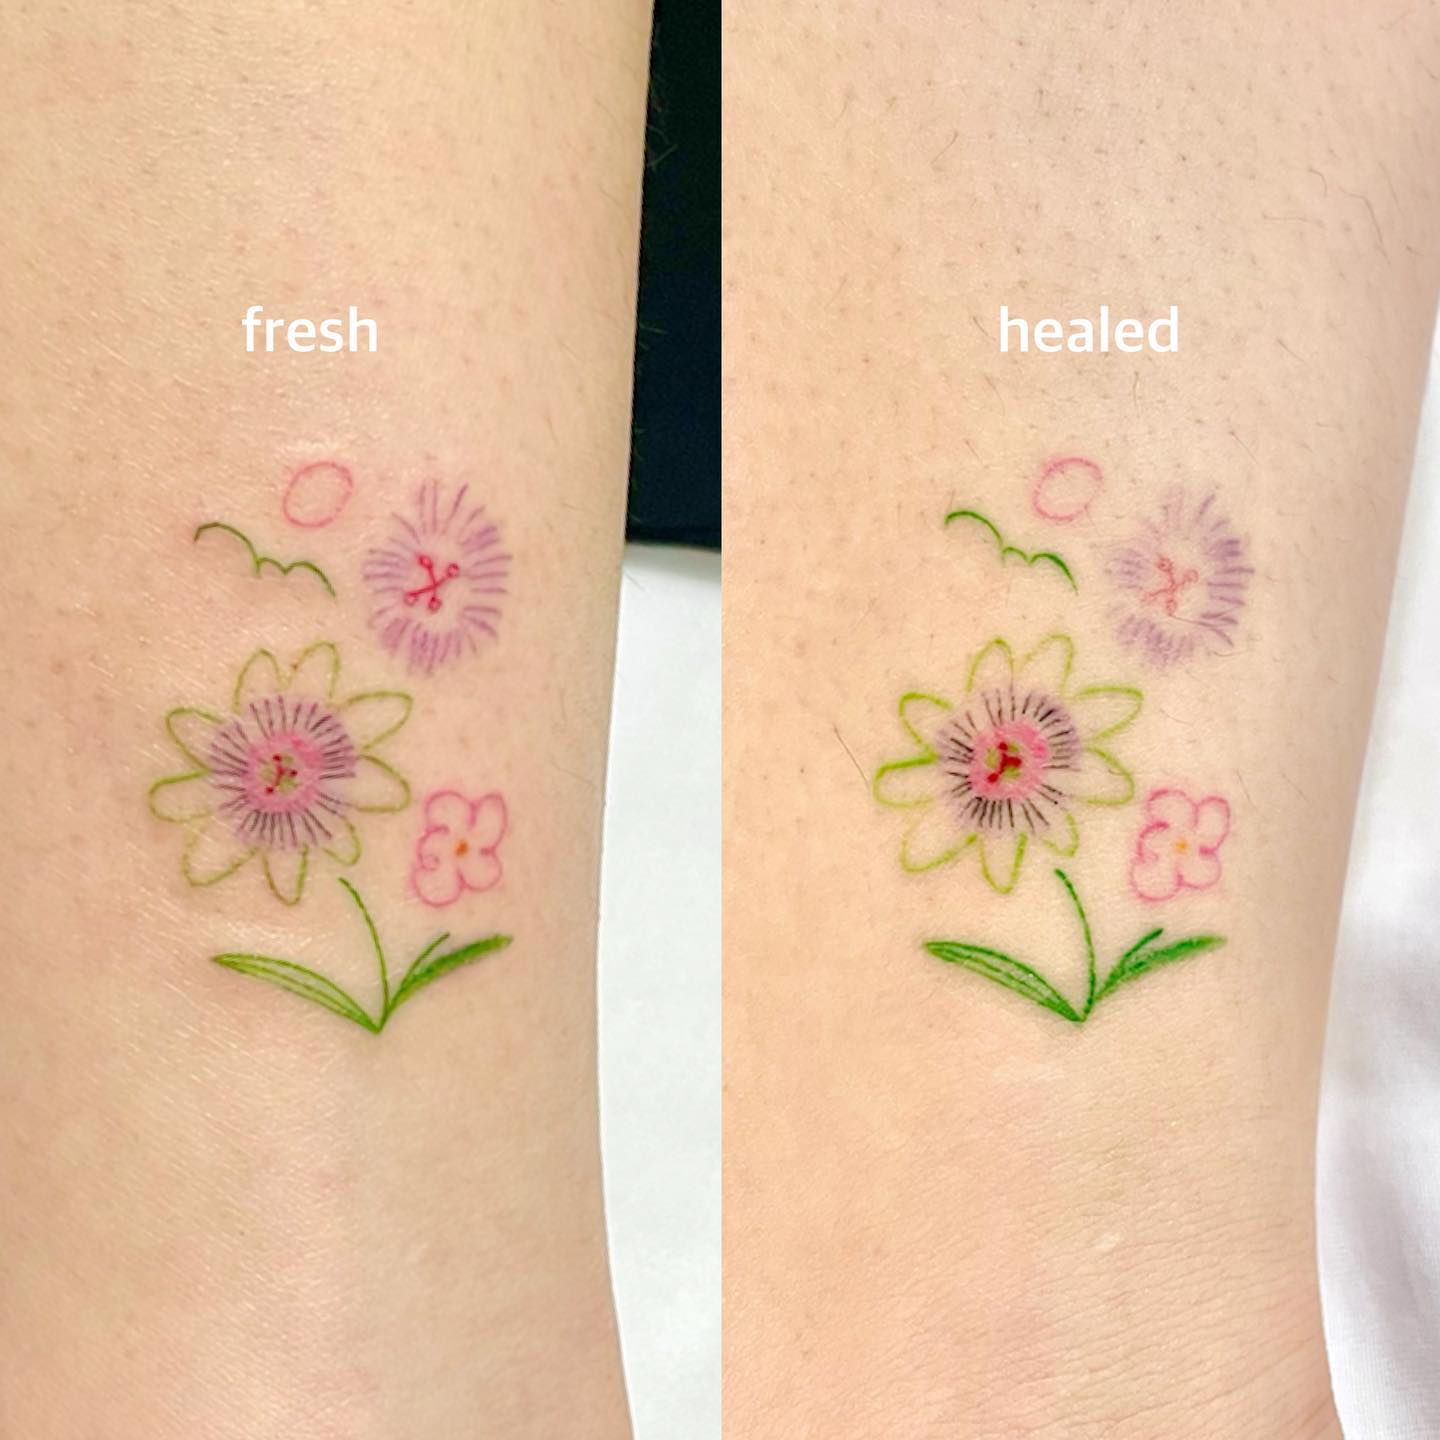 fresh and healed tattoo